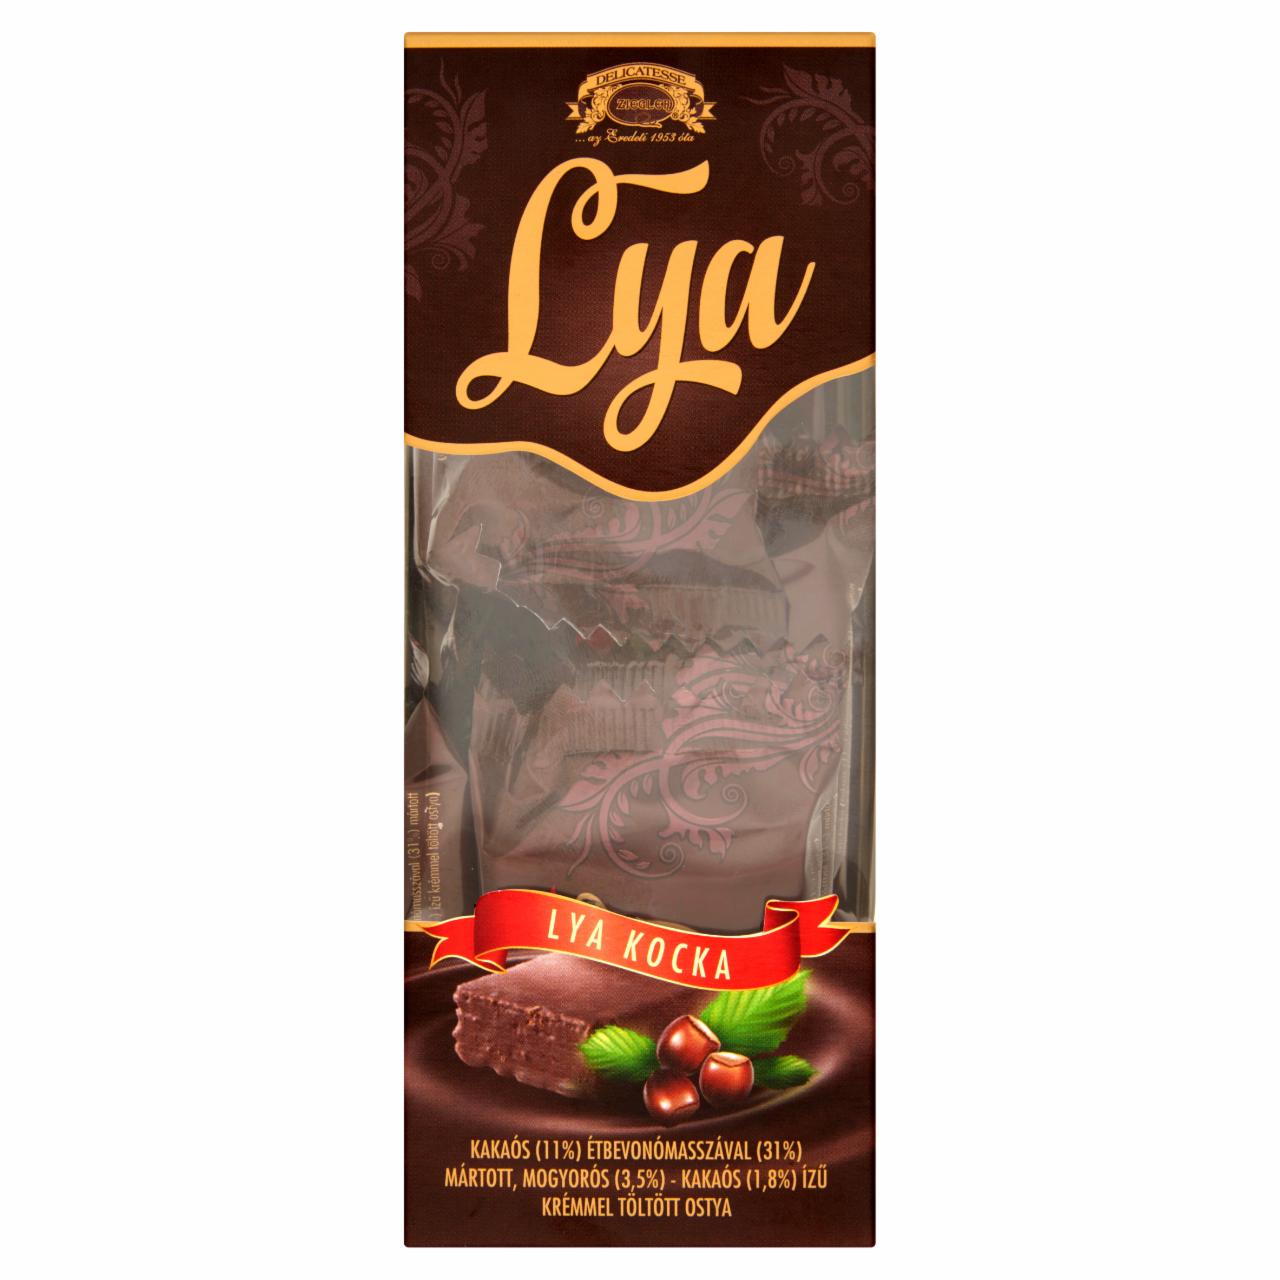 Képek - Ziegler Lya Kocka kakaós étbevonómasszával mártott mogyorós-kakaós krémmel töltött ostya 10 x 16 g